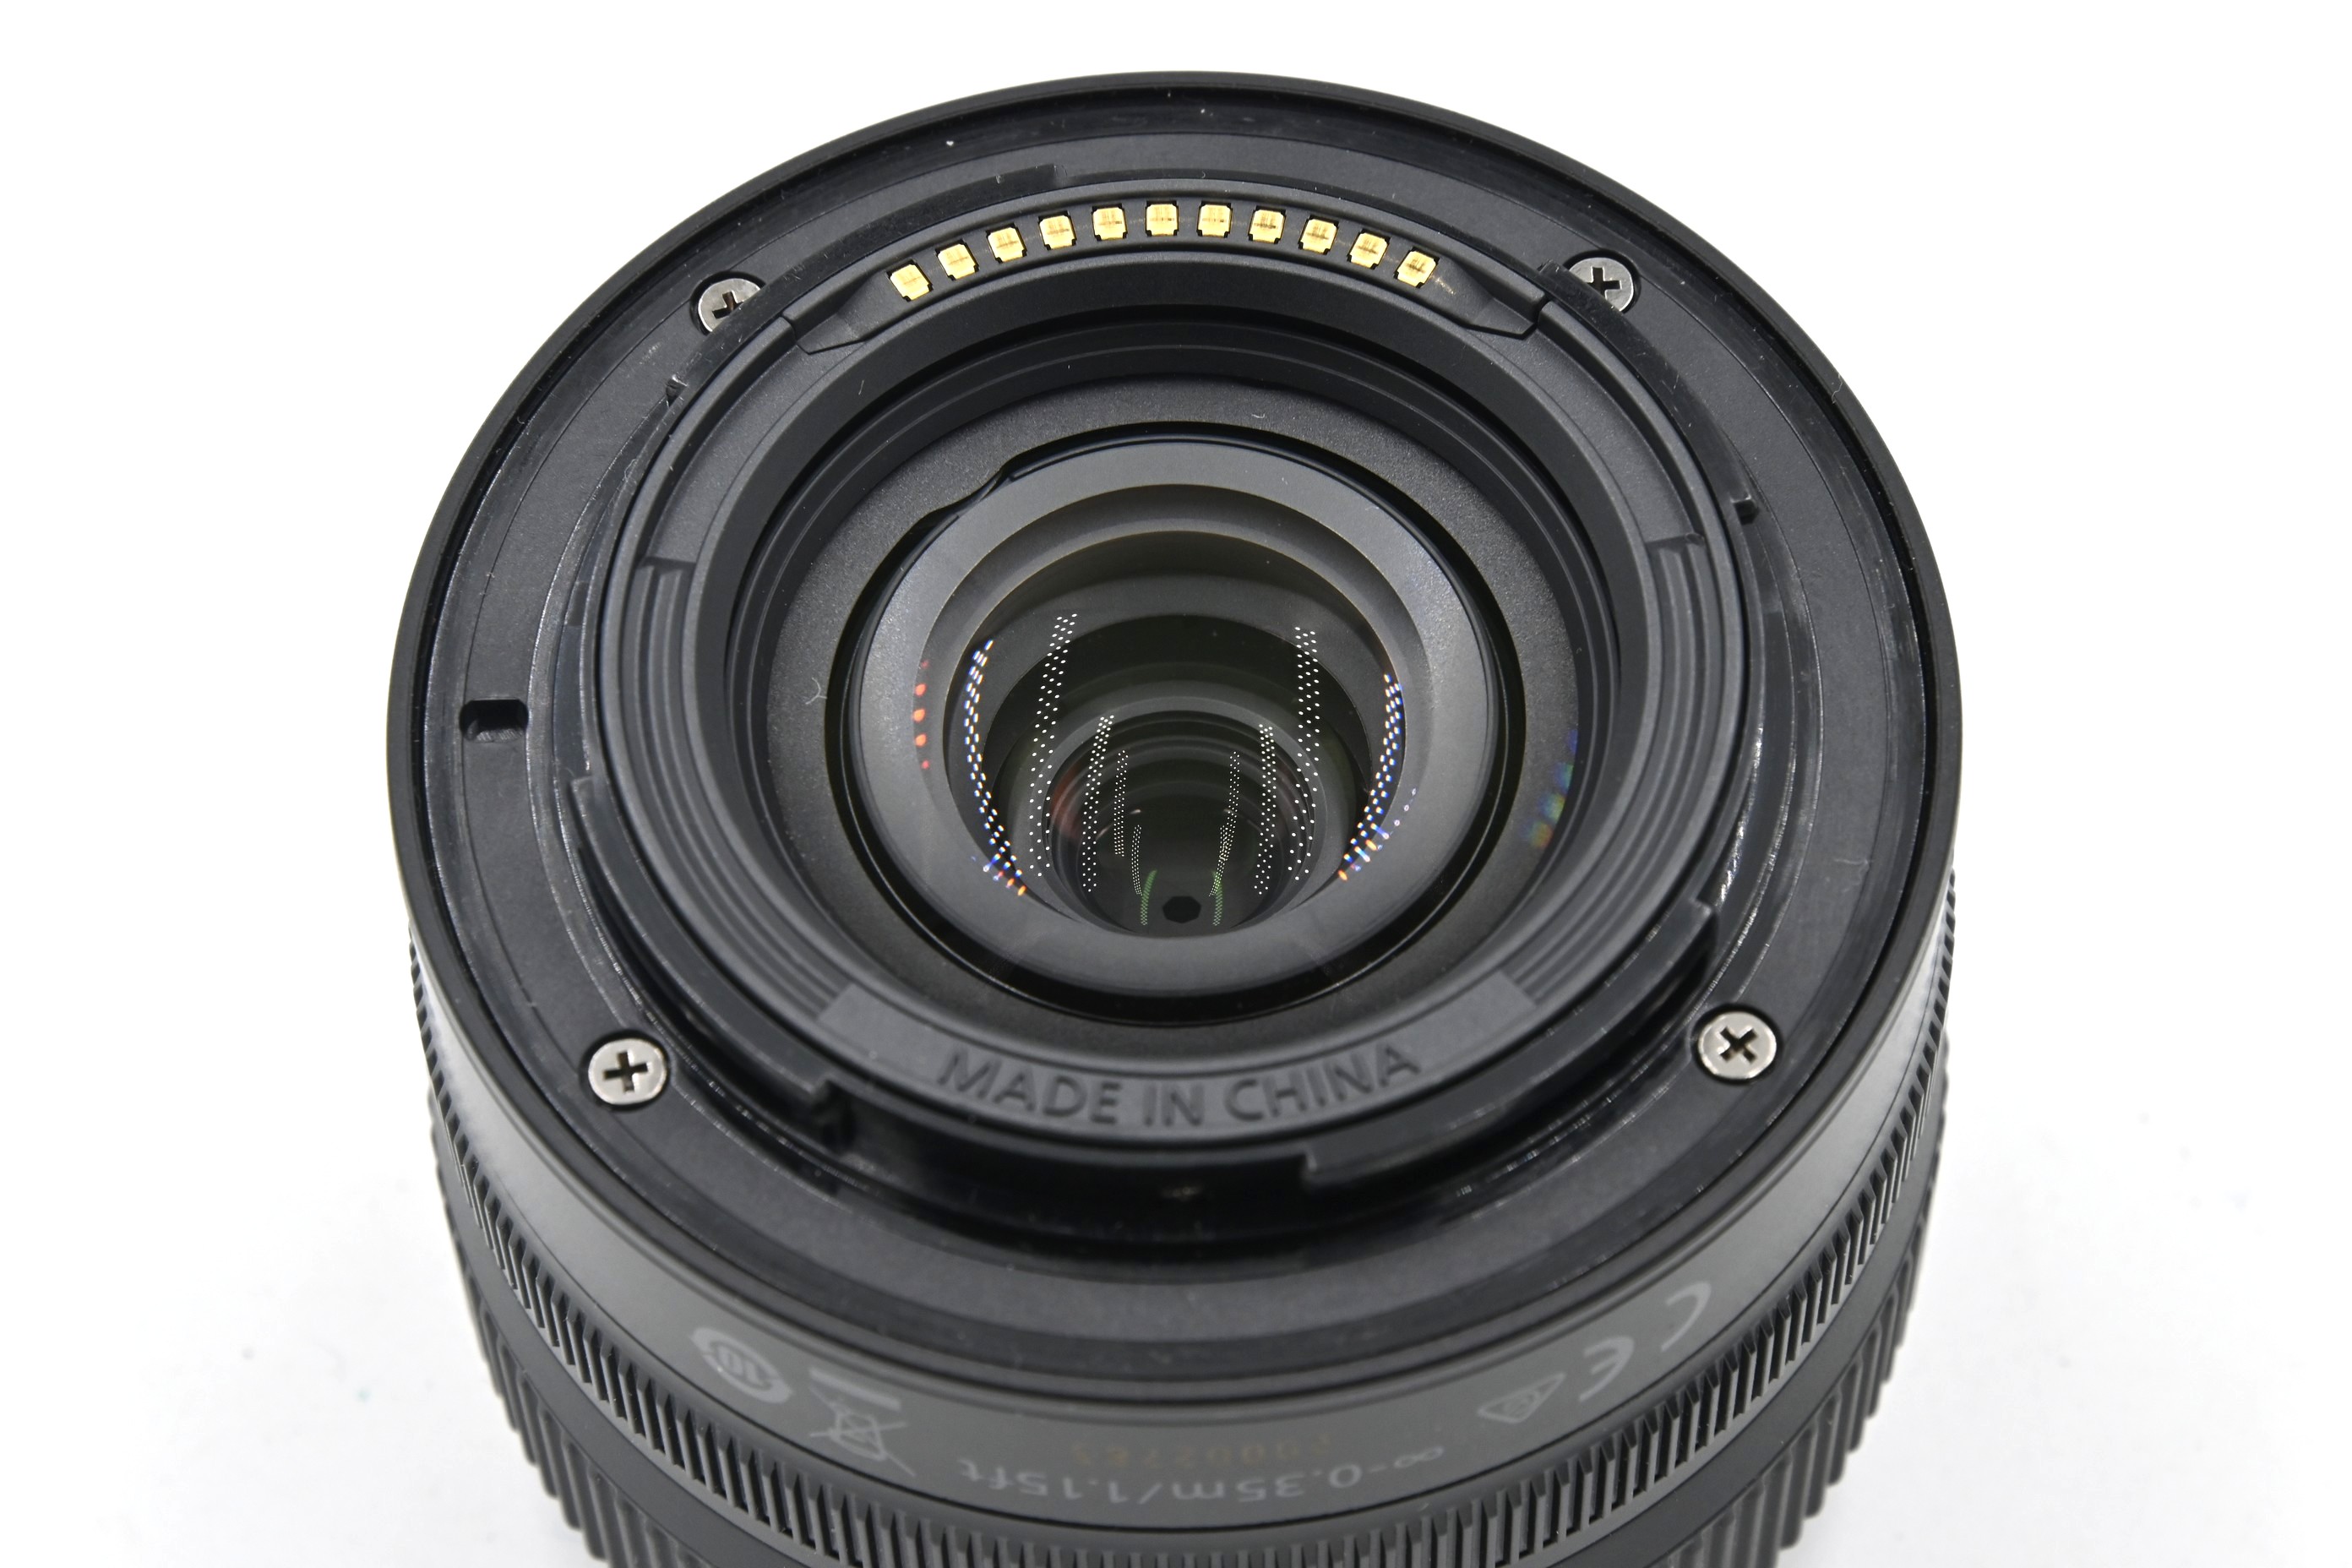 Объектив Nikon Nikkor Z 24-50mm f/4-6.3 (состояние 5)